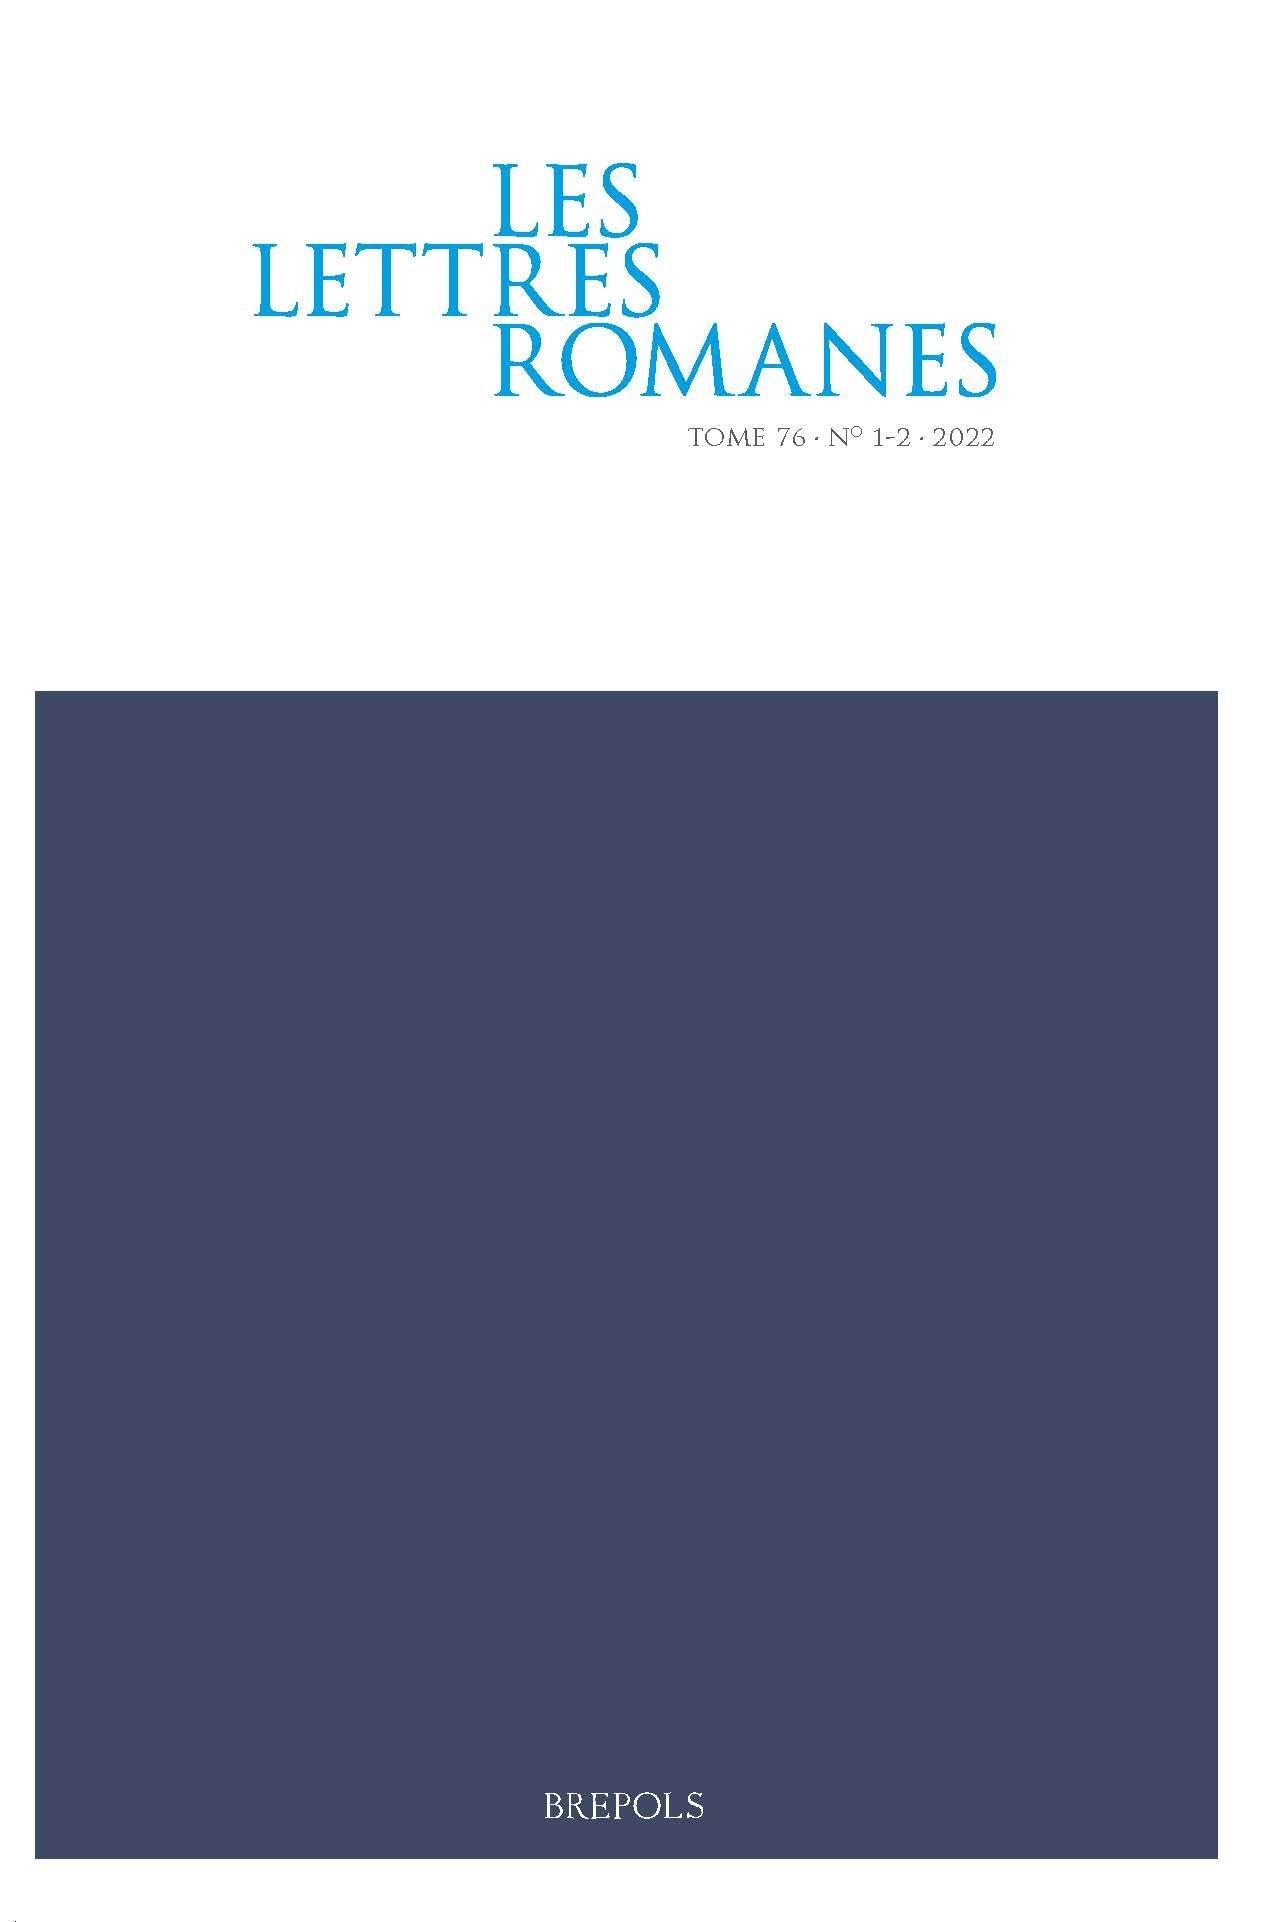 Les Lettres romanes, vol. 76, 1-2 (2022)